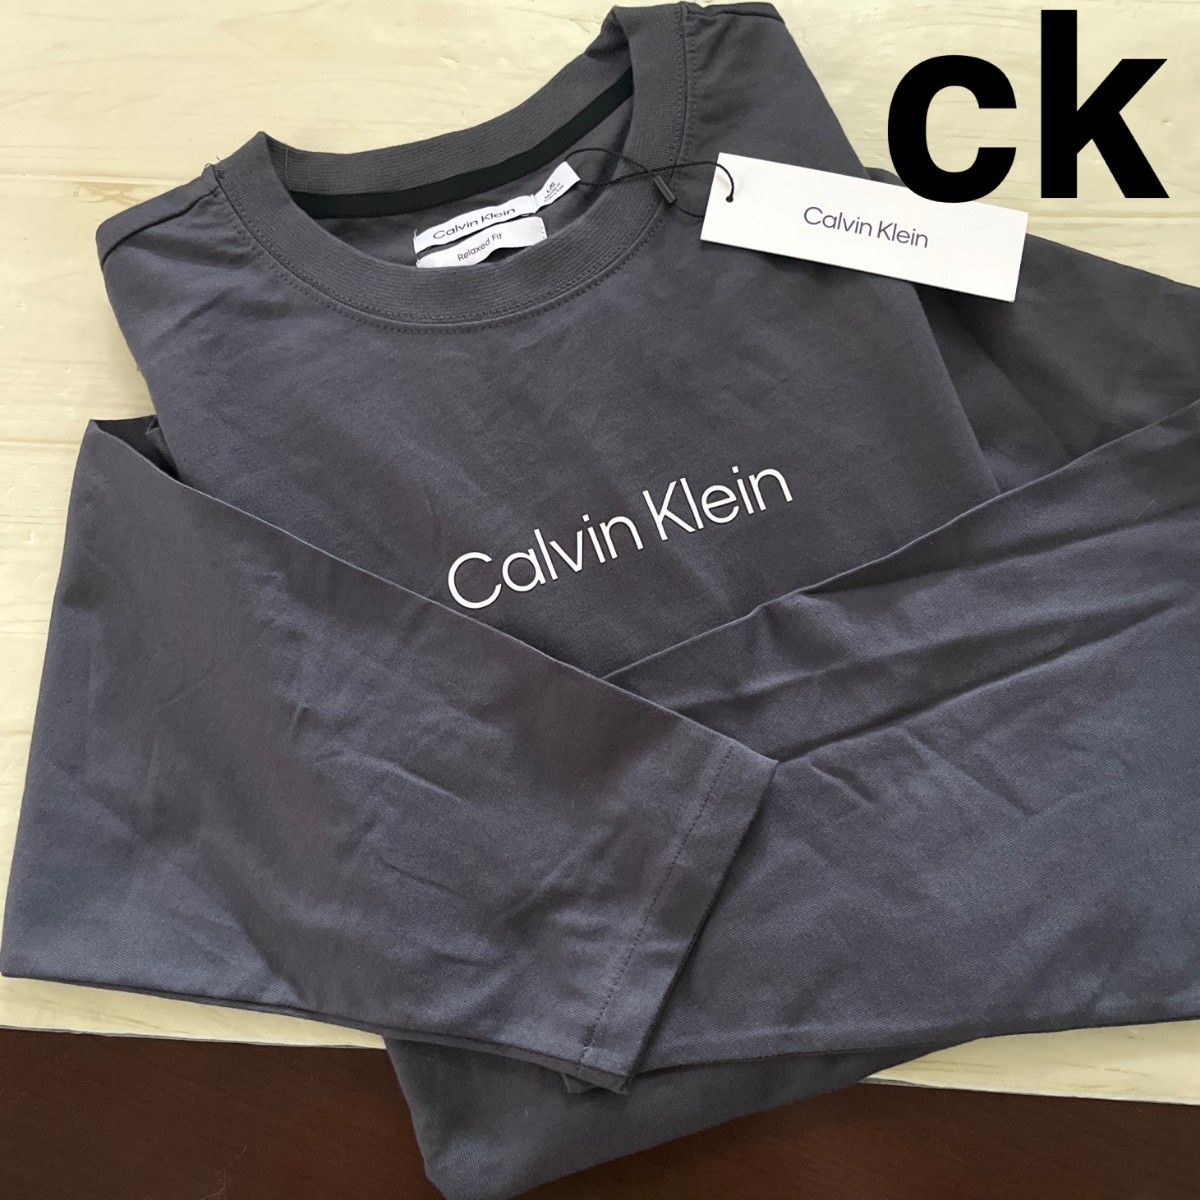 CK カルバンクライン Calvin Klein ロゴ トレーナー 正規品 スウェット パーカー ブランド ロングTシャツ グレー メンズ L/XL長袖Tシャツ